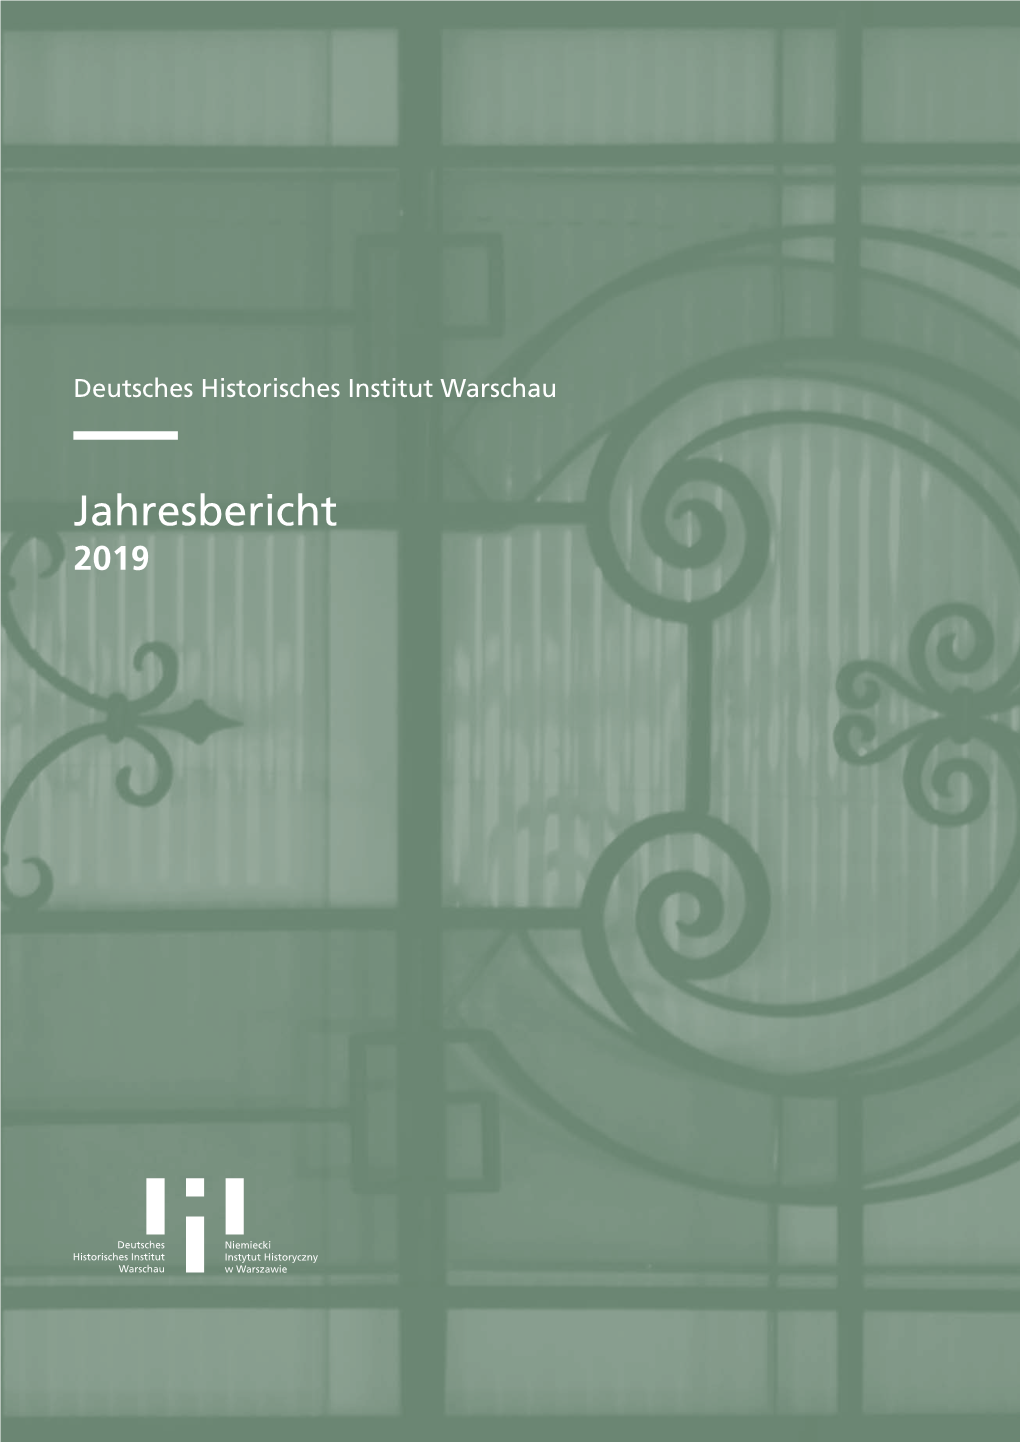 Jahresbericht 2019 © Deutsches Historisches Institut Warschau